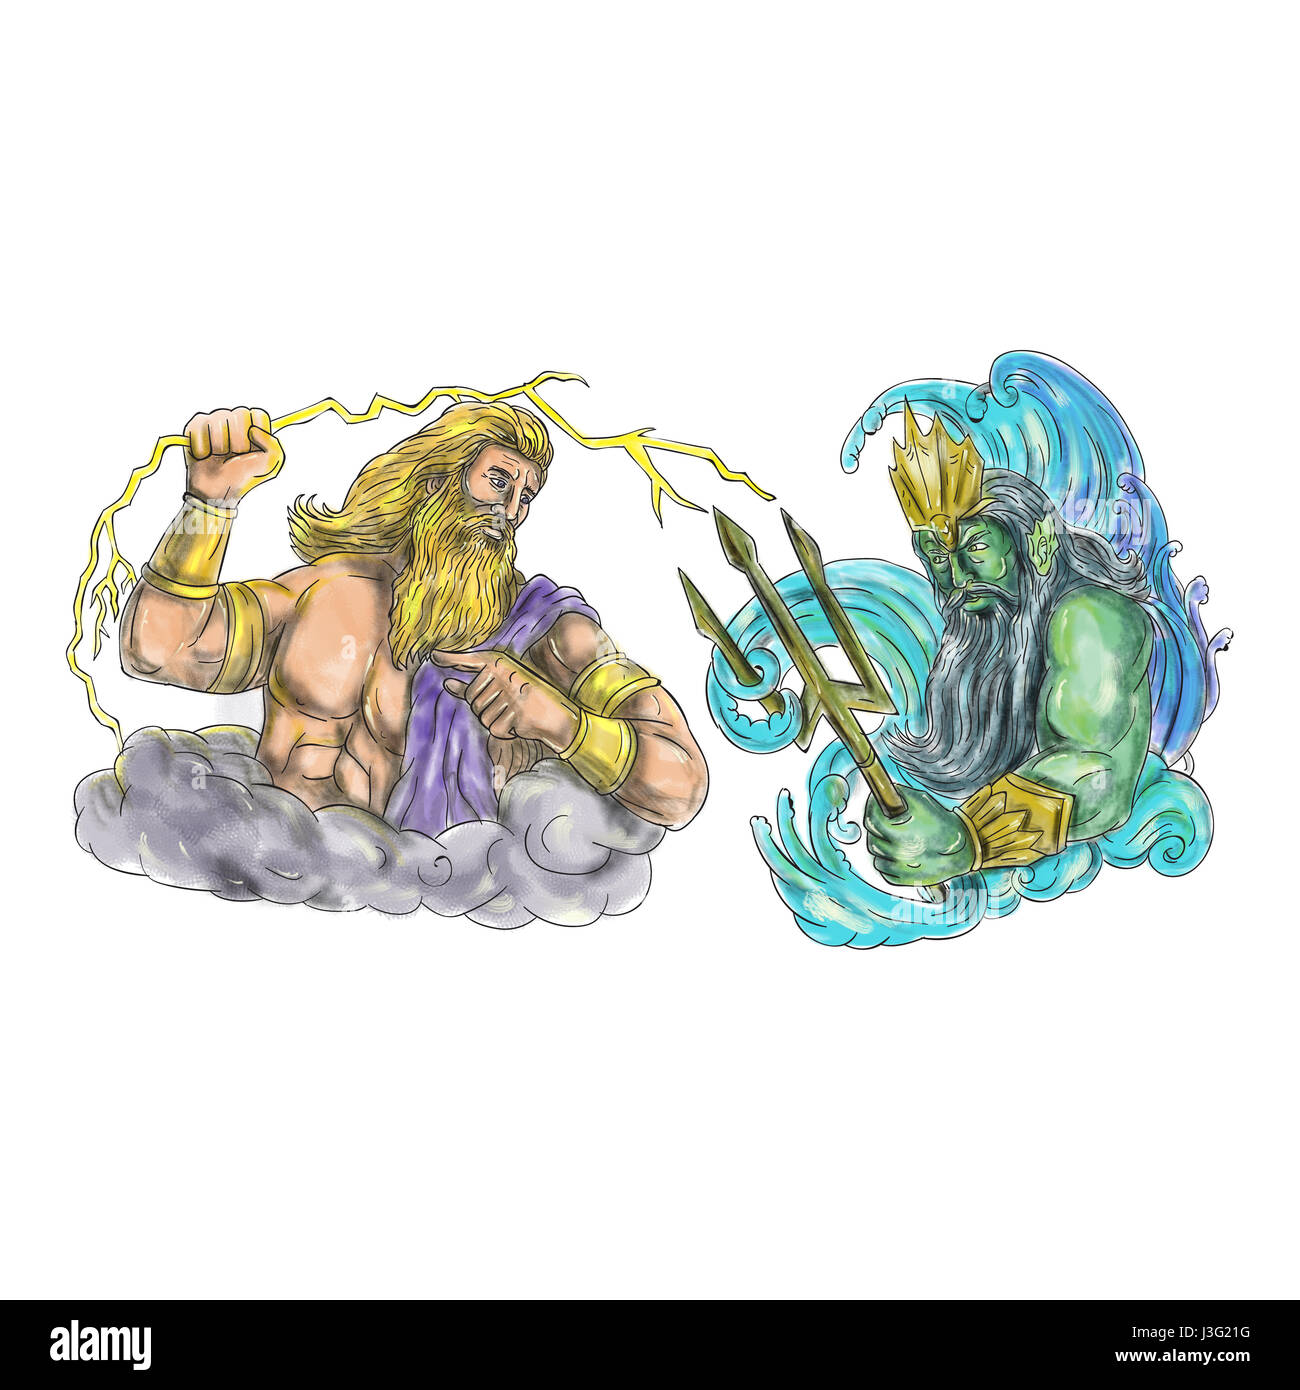 Tatuaggio illustrazione dello stile di Zeus, il dio greco del cielo e dominatore della Olympian dèi wielding tenendo un fulmine thunderbolt versus poseidon holdin Foto Stock